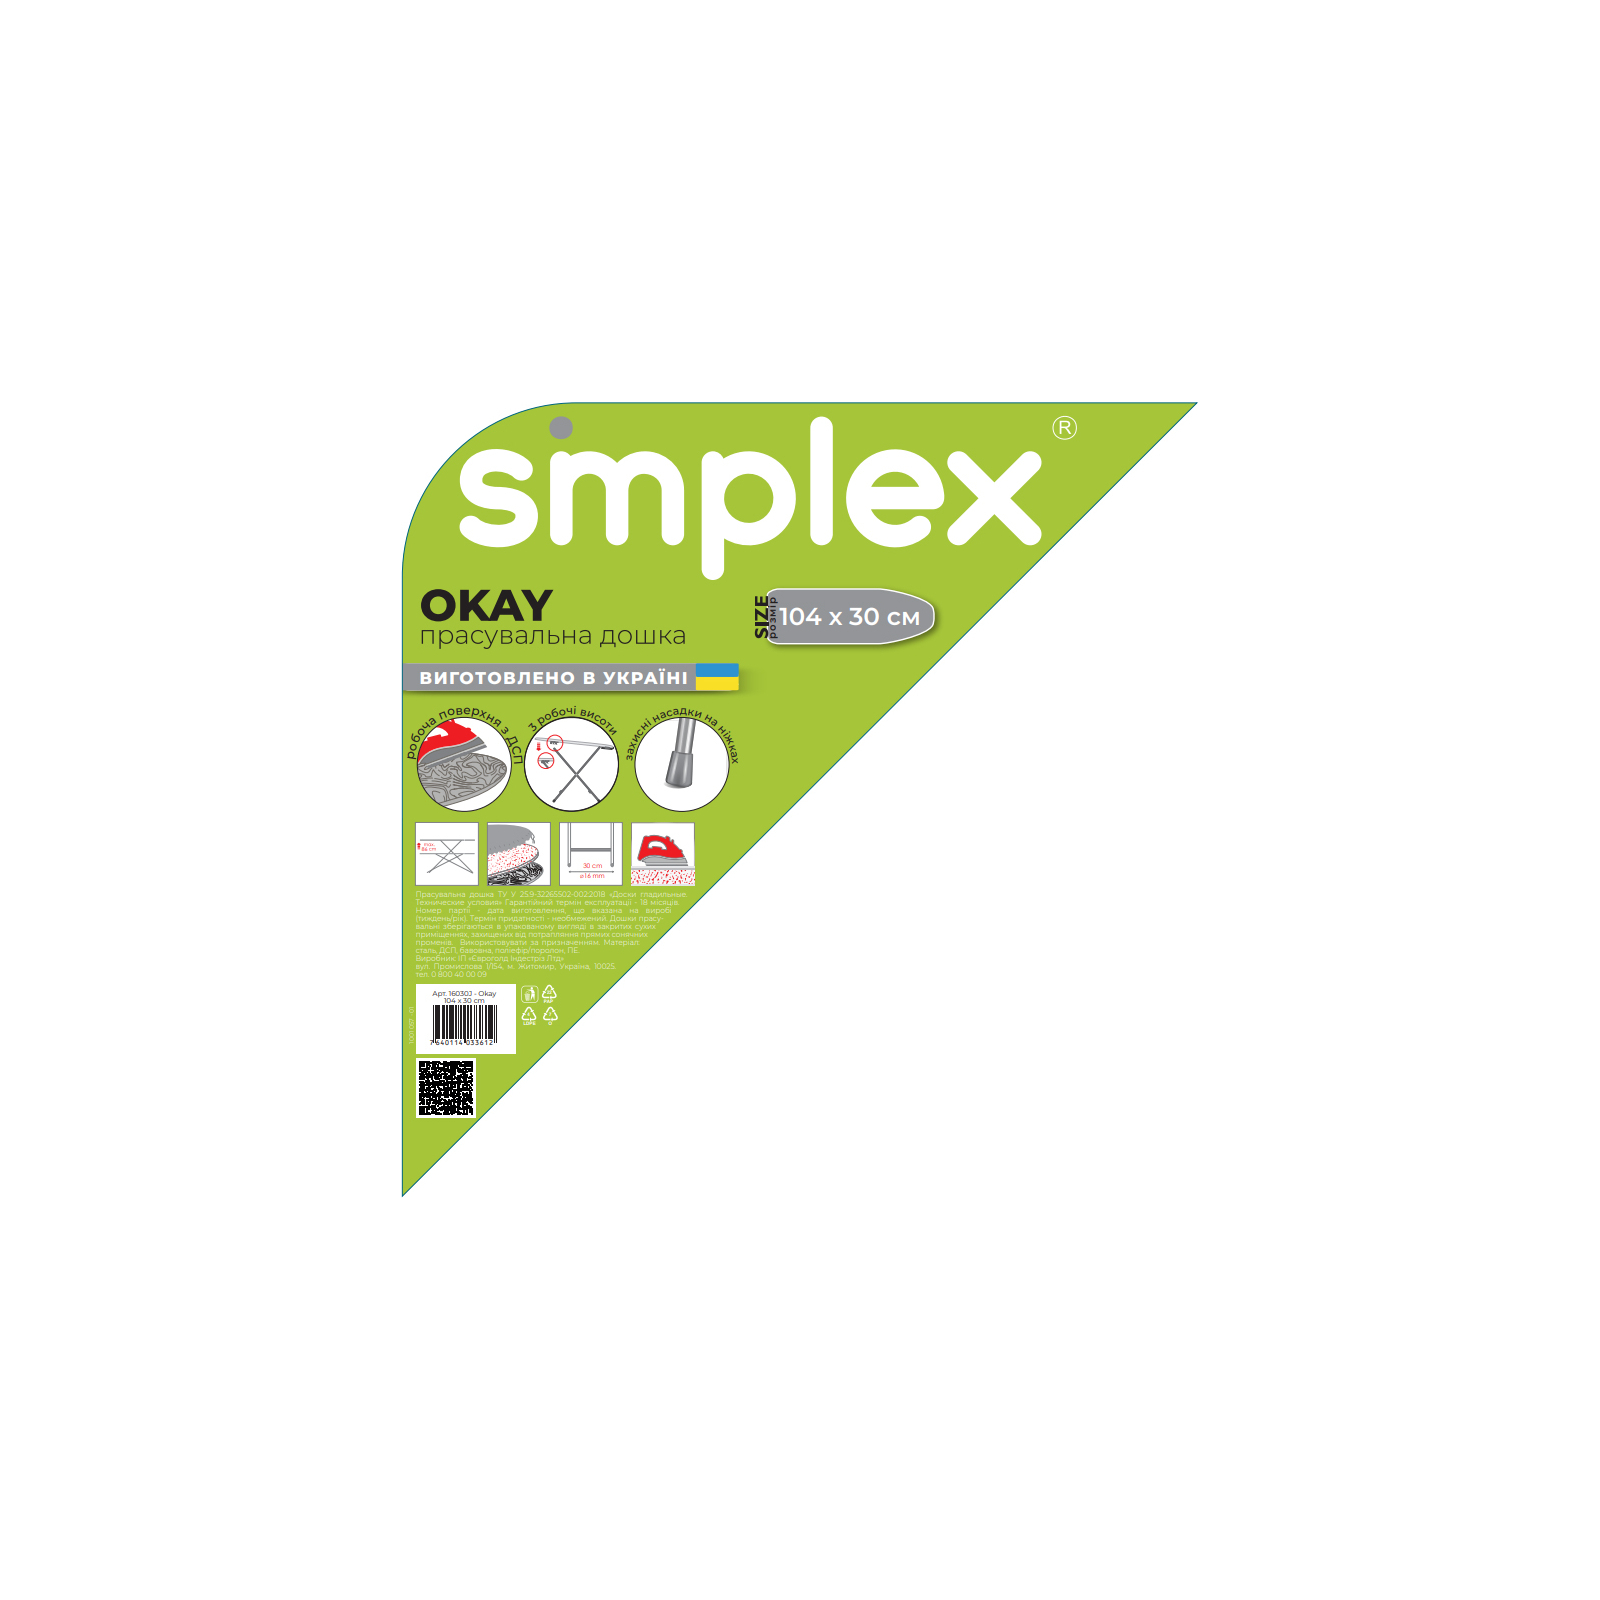 Гладильная доска Simplex Okay (16030J) изображение 2